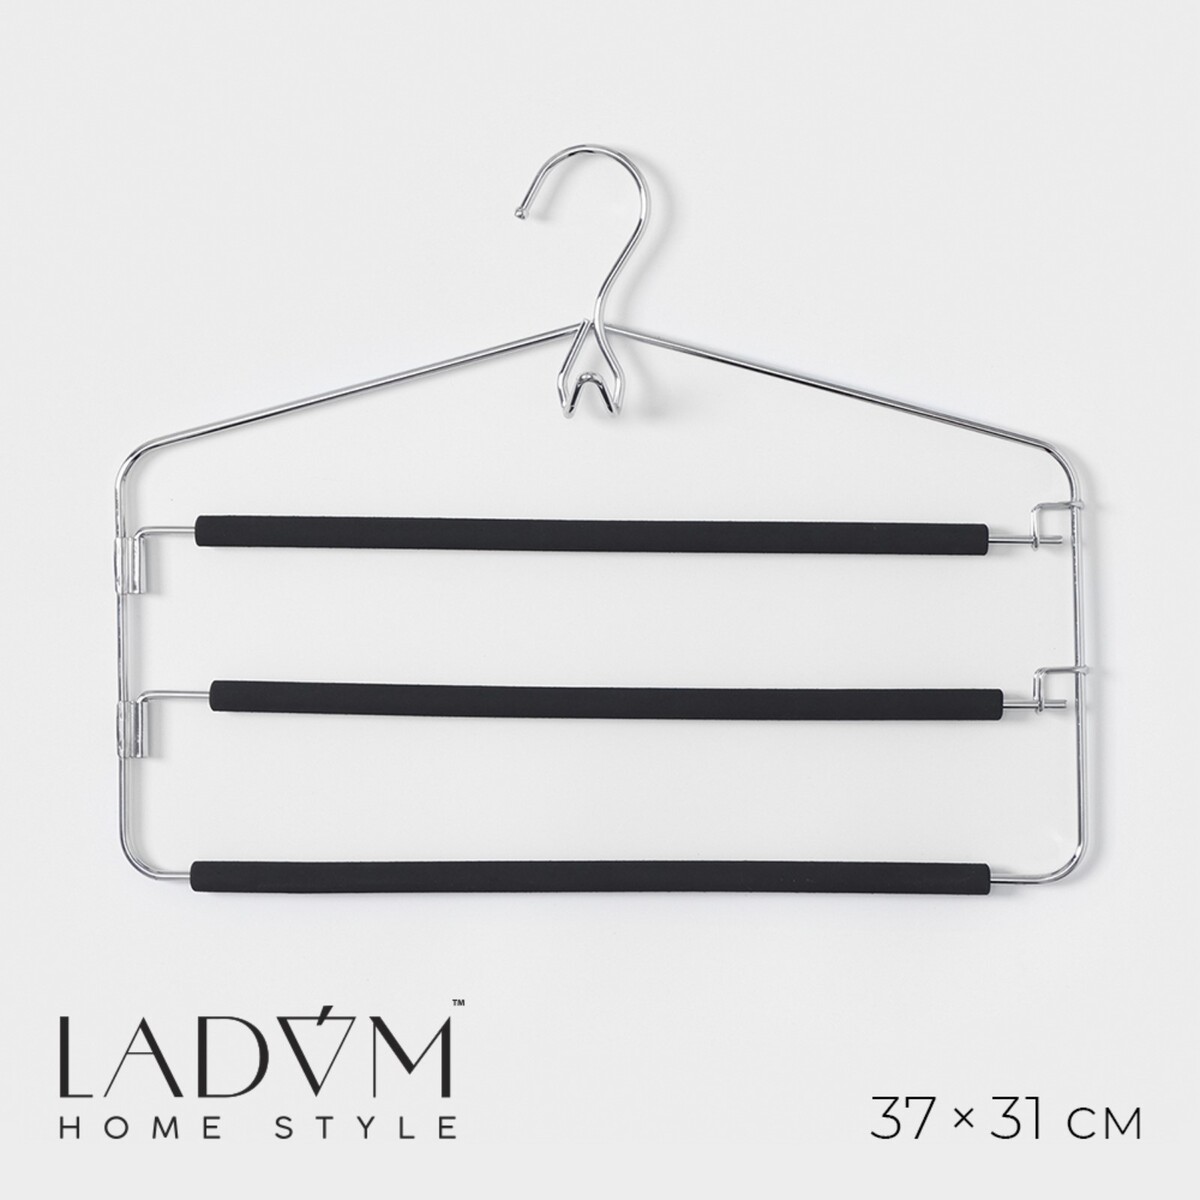 Плечики - вешалки многоуровневые для брюк и одежды ladо́m doux с антискользящей защитой от заломов, 37×31см, цвет черный